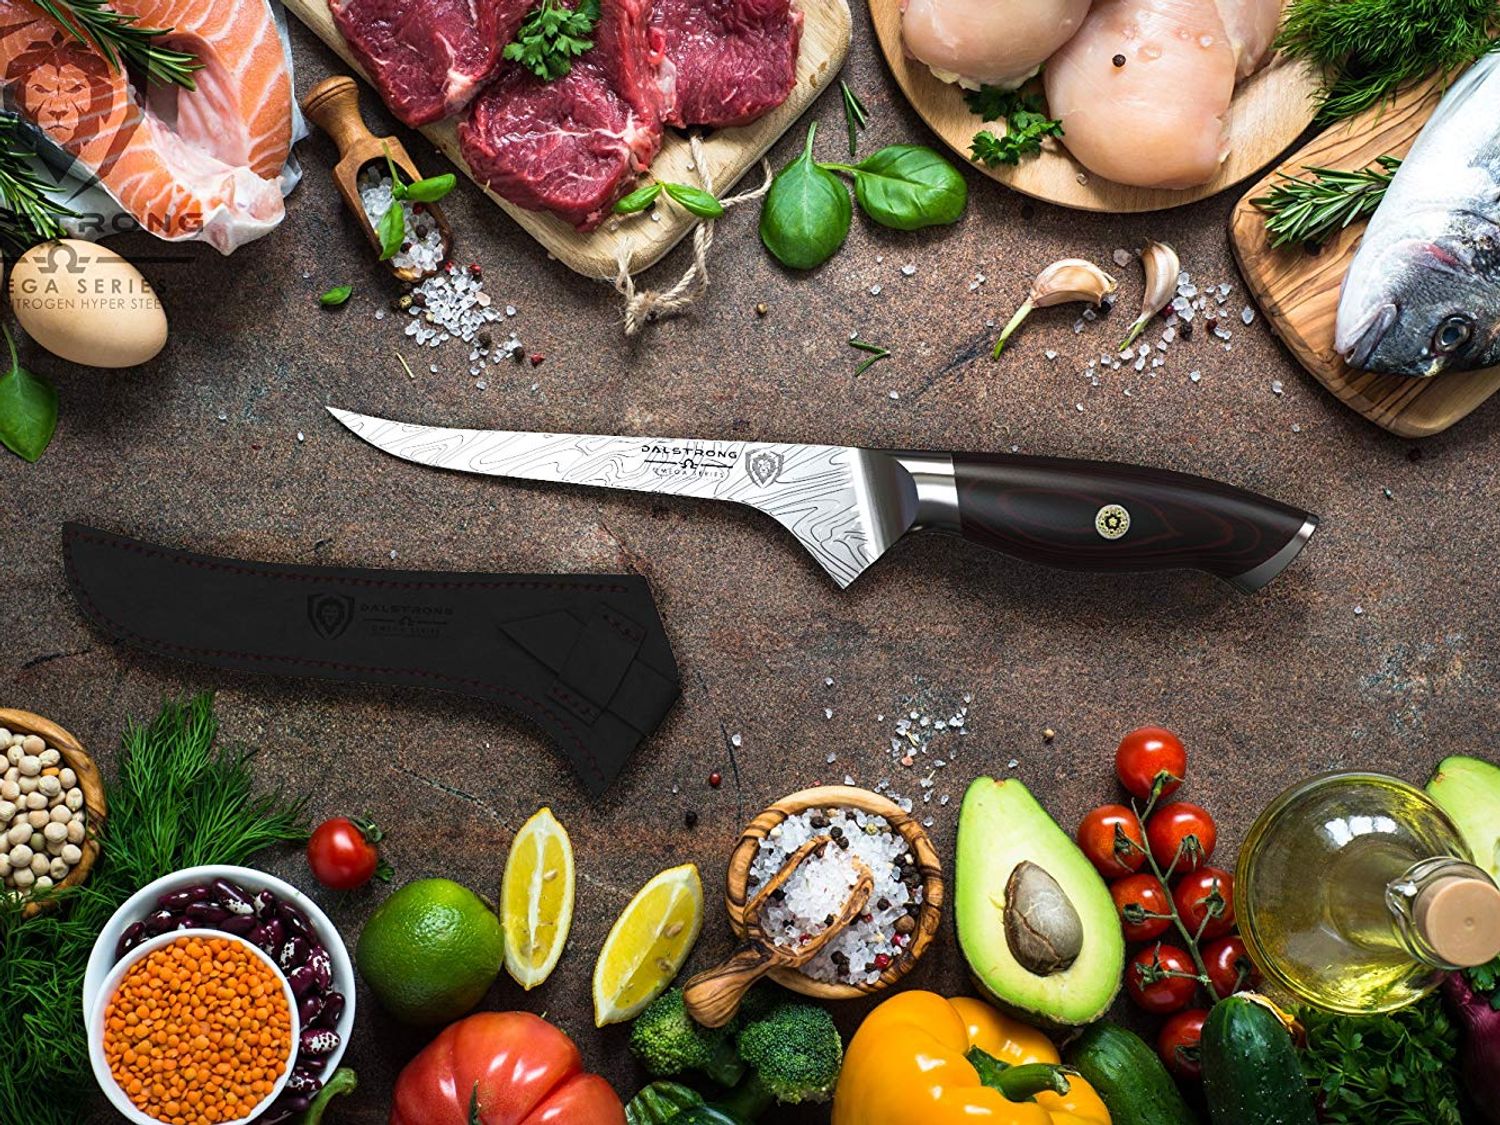 Sabatier - Malette du cuisinier 5 couteaux professionnels français lames  acier inox manches à rivets : : Cuisine et Maison